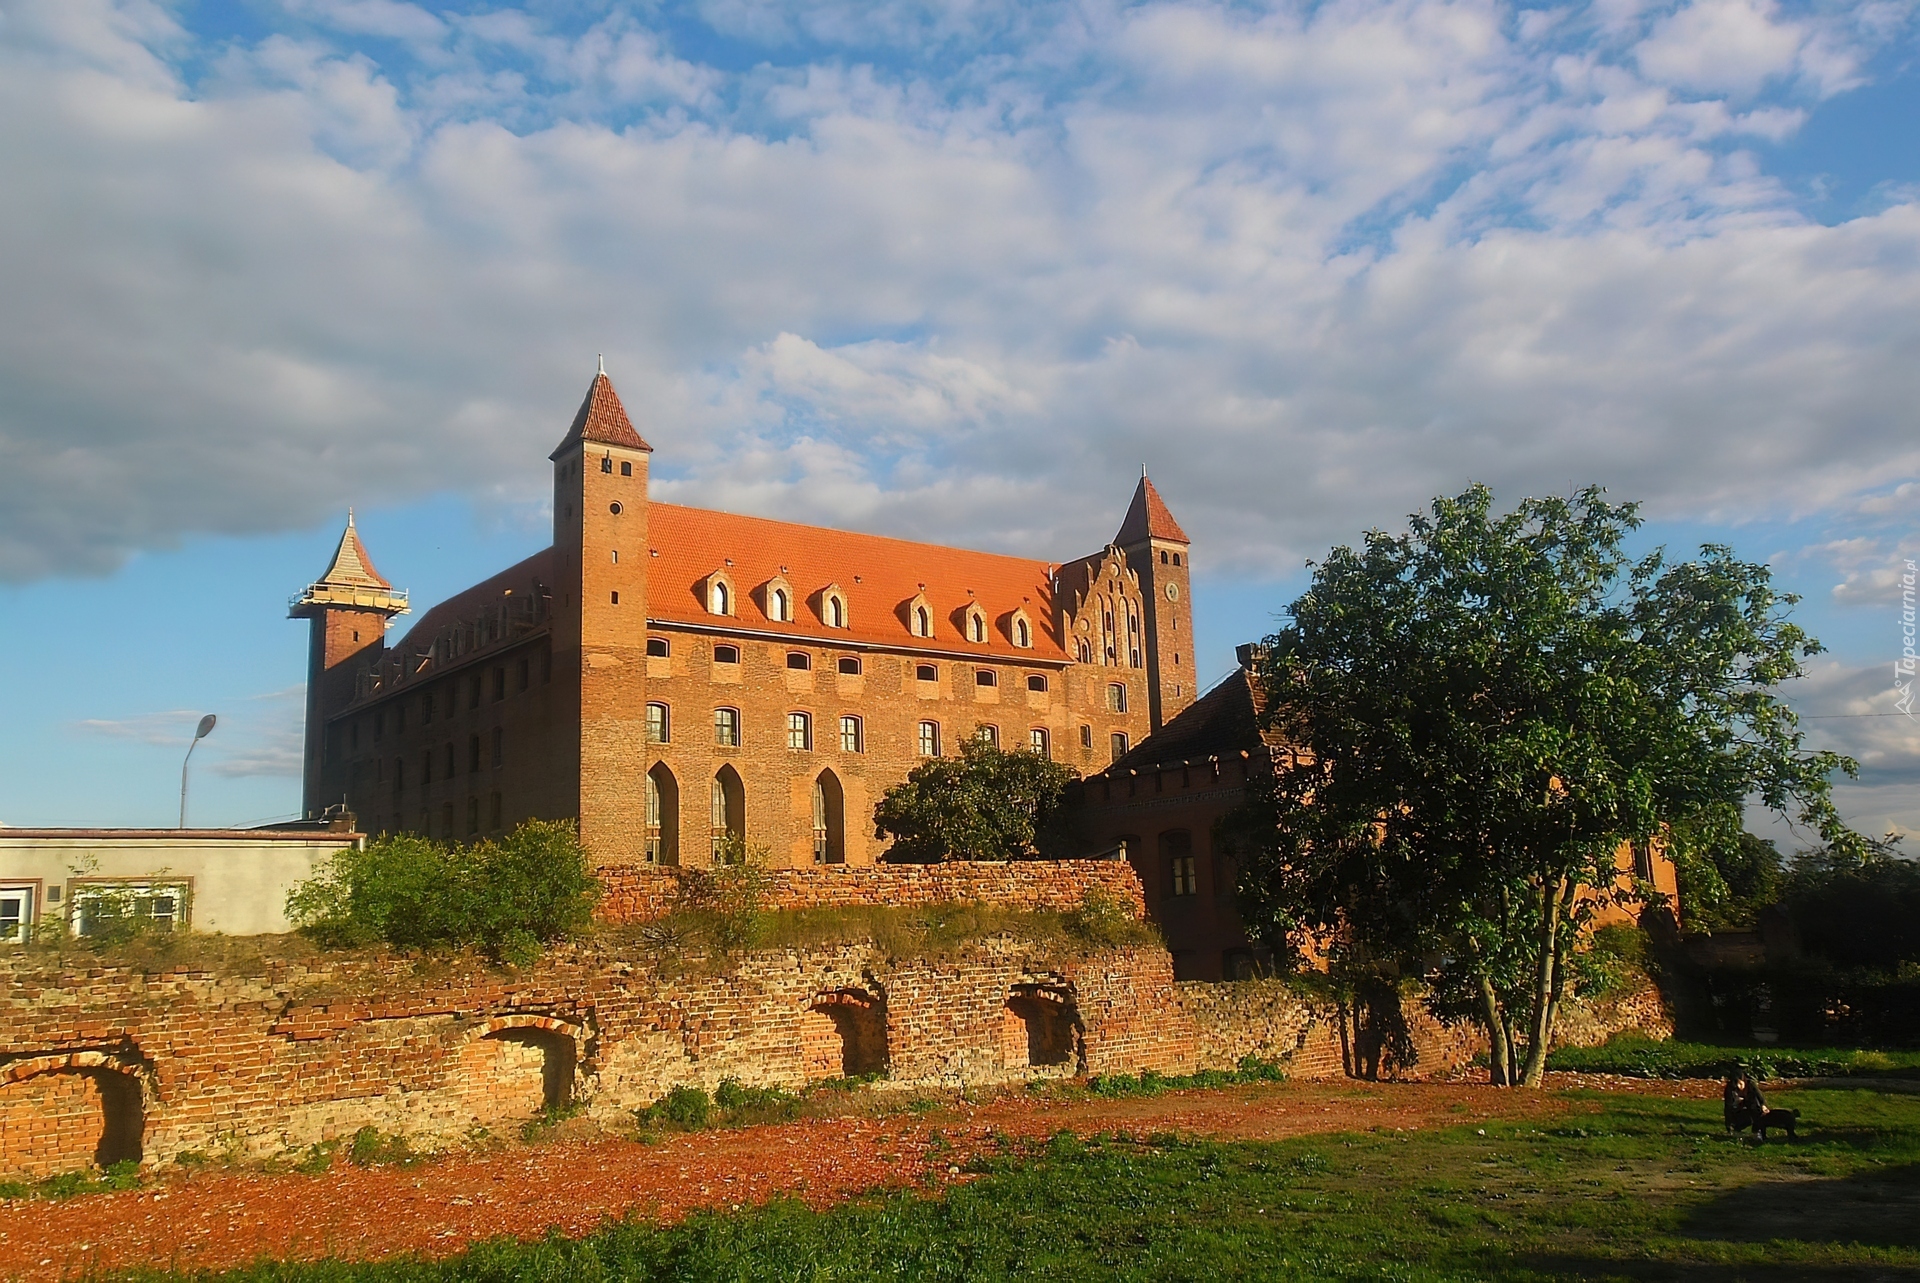 Zamek w Gniewie, Polska, Pomorskie